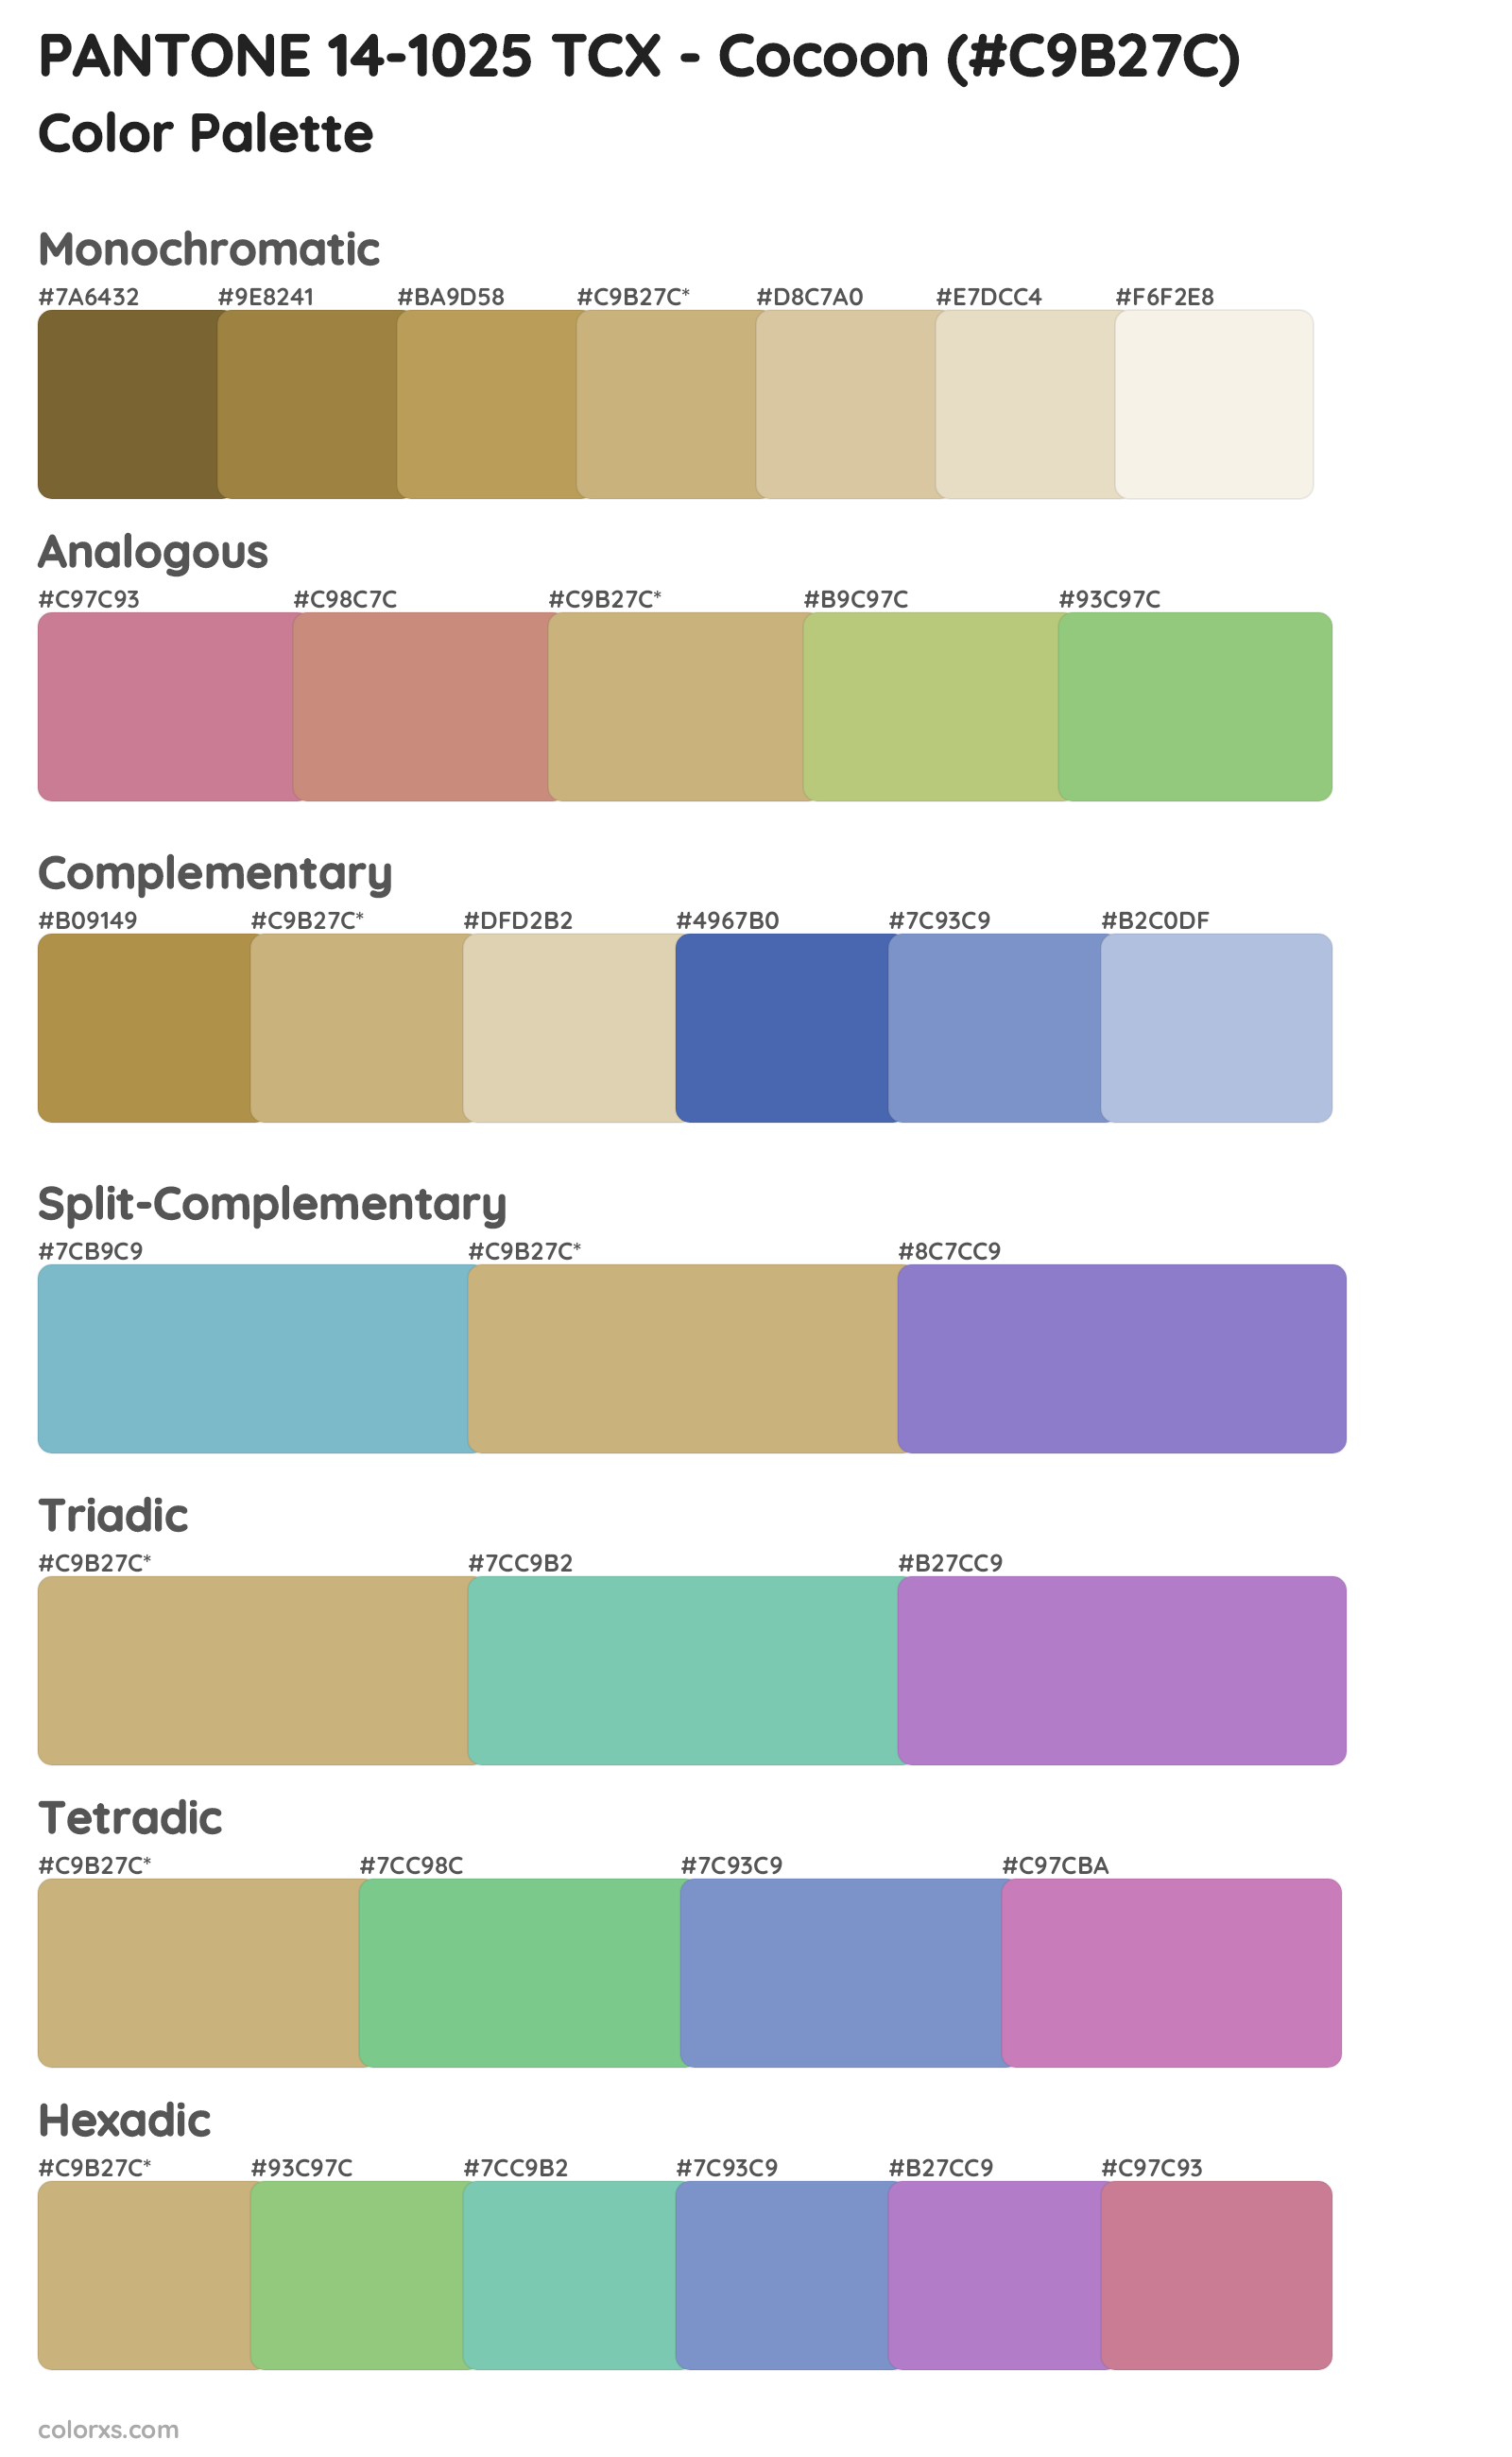 PANTONE 14-1025 TCX - Cocoon Color Scheme Palettes